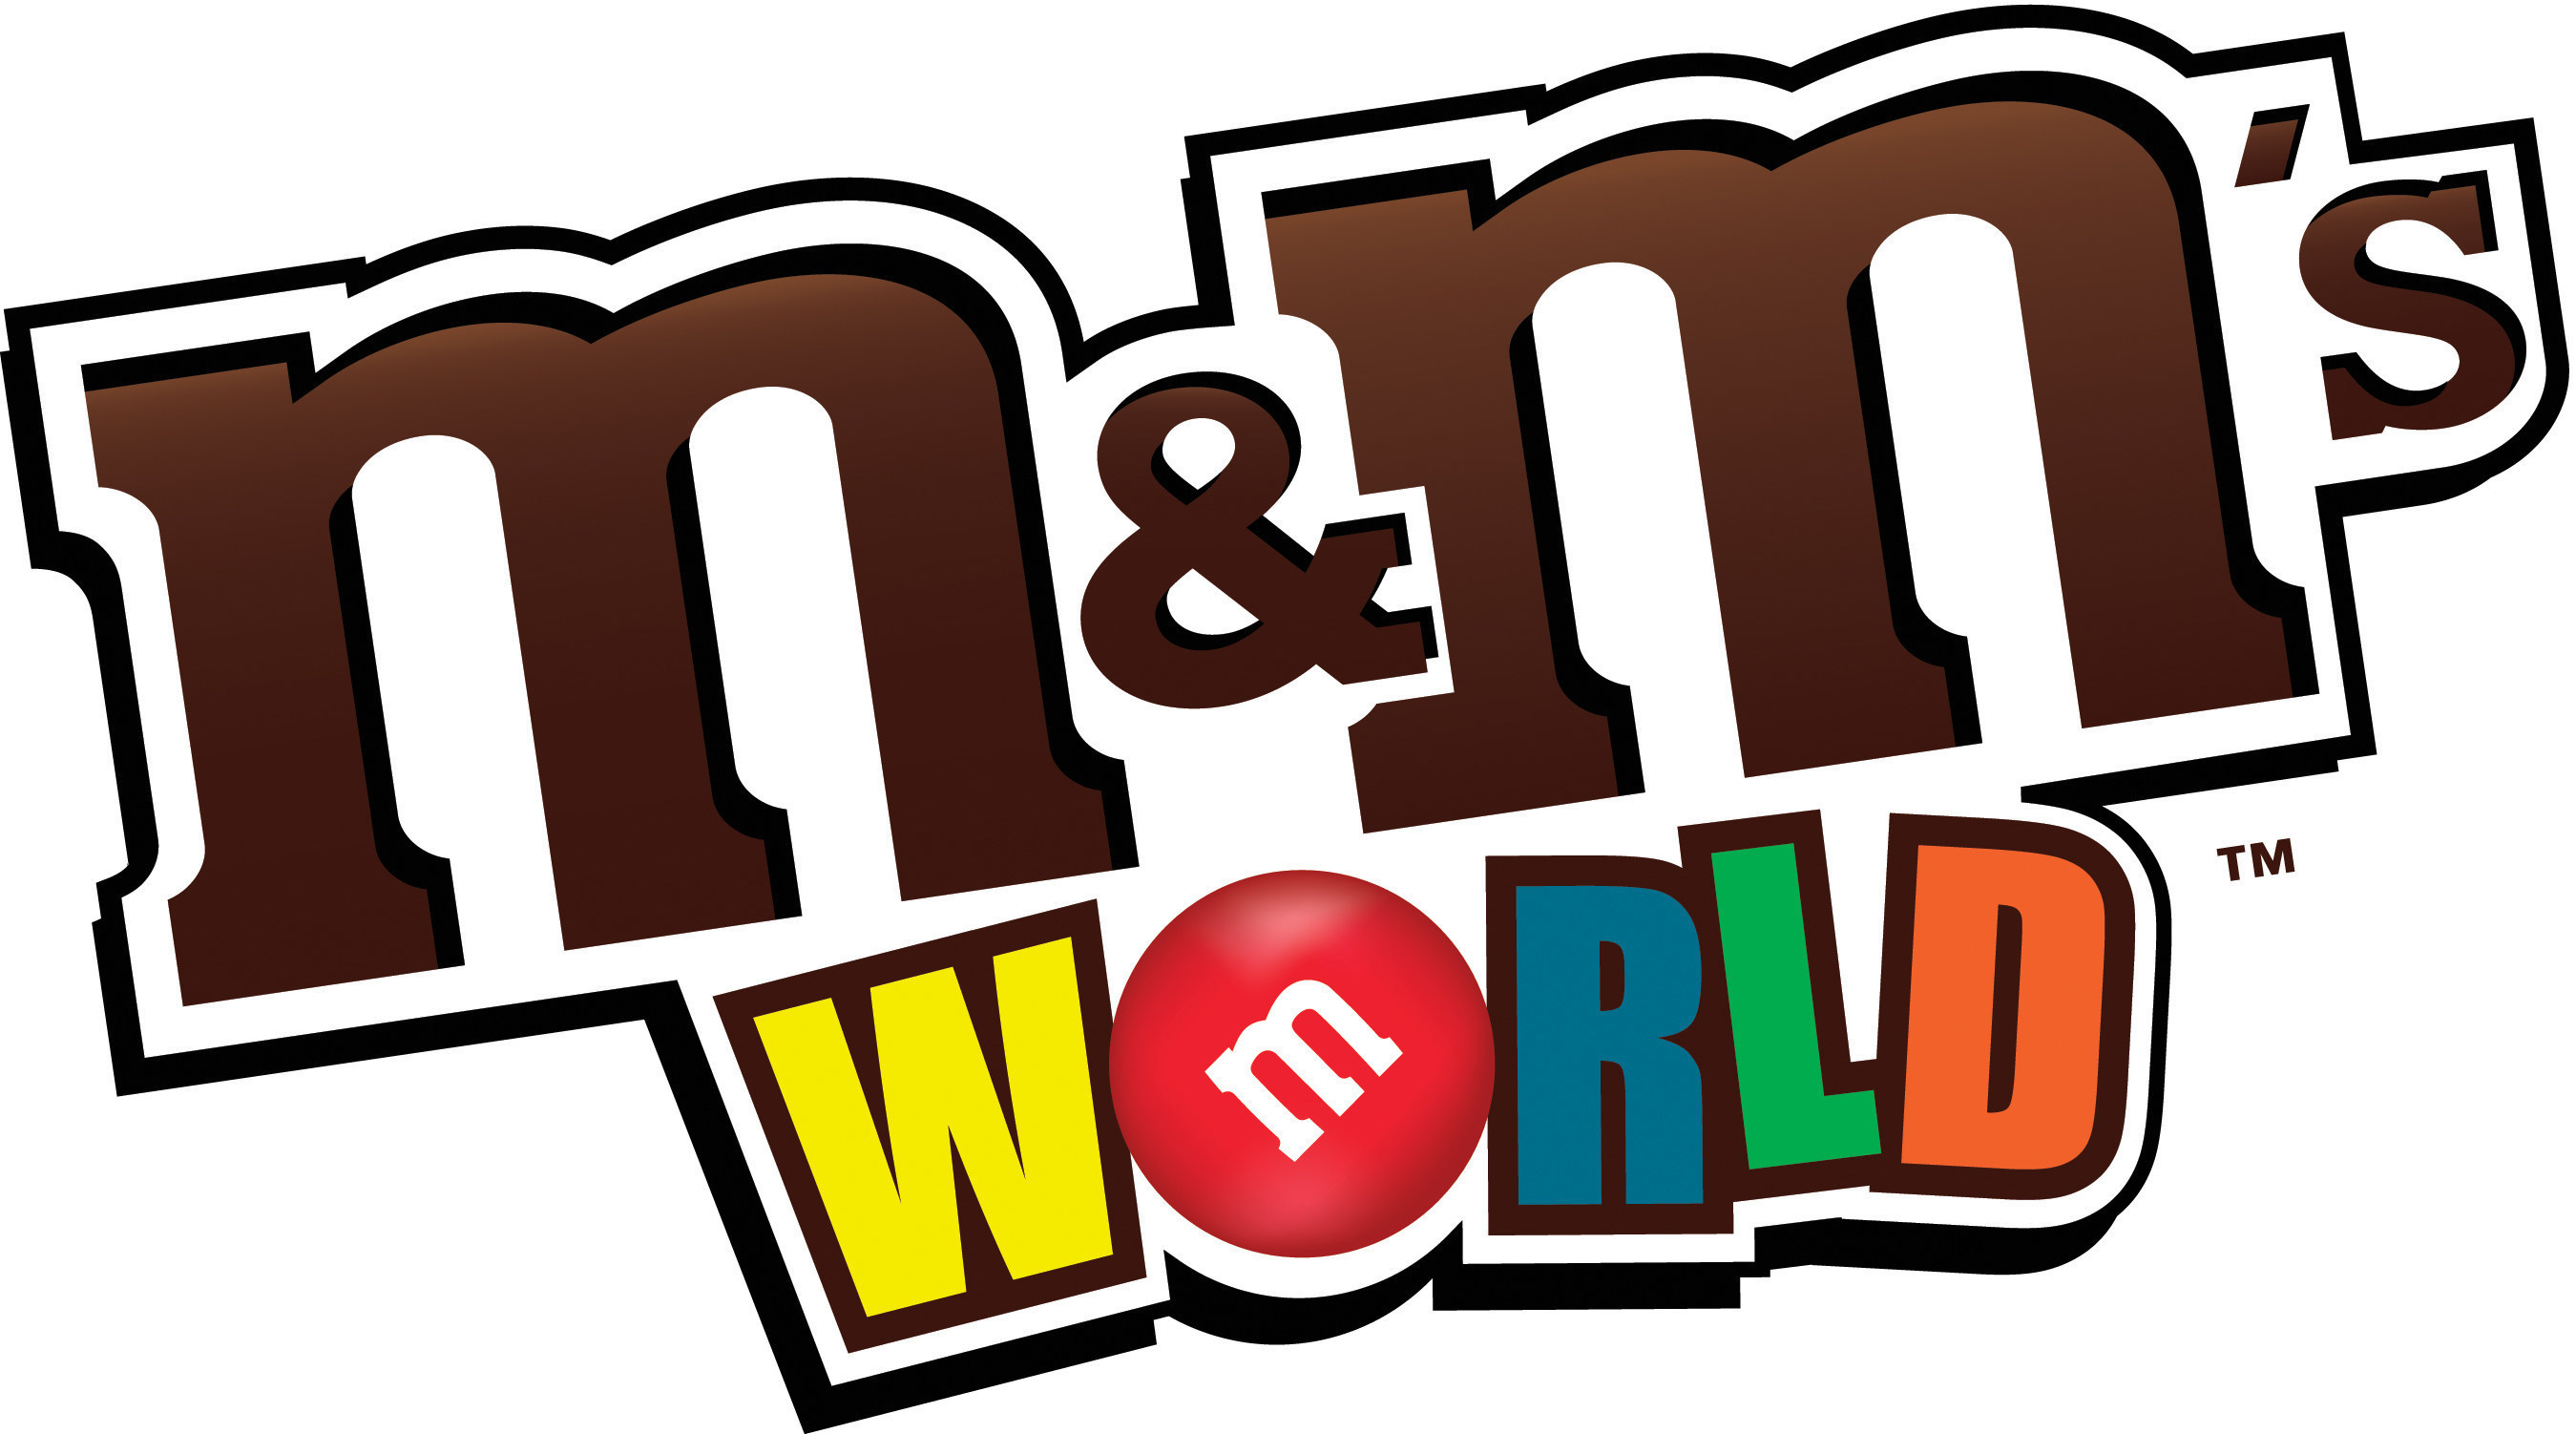 M&M's World - Wikipedia